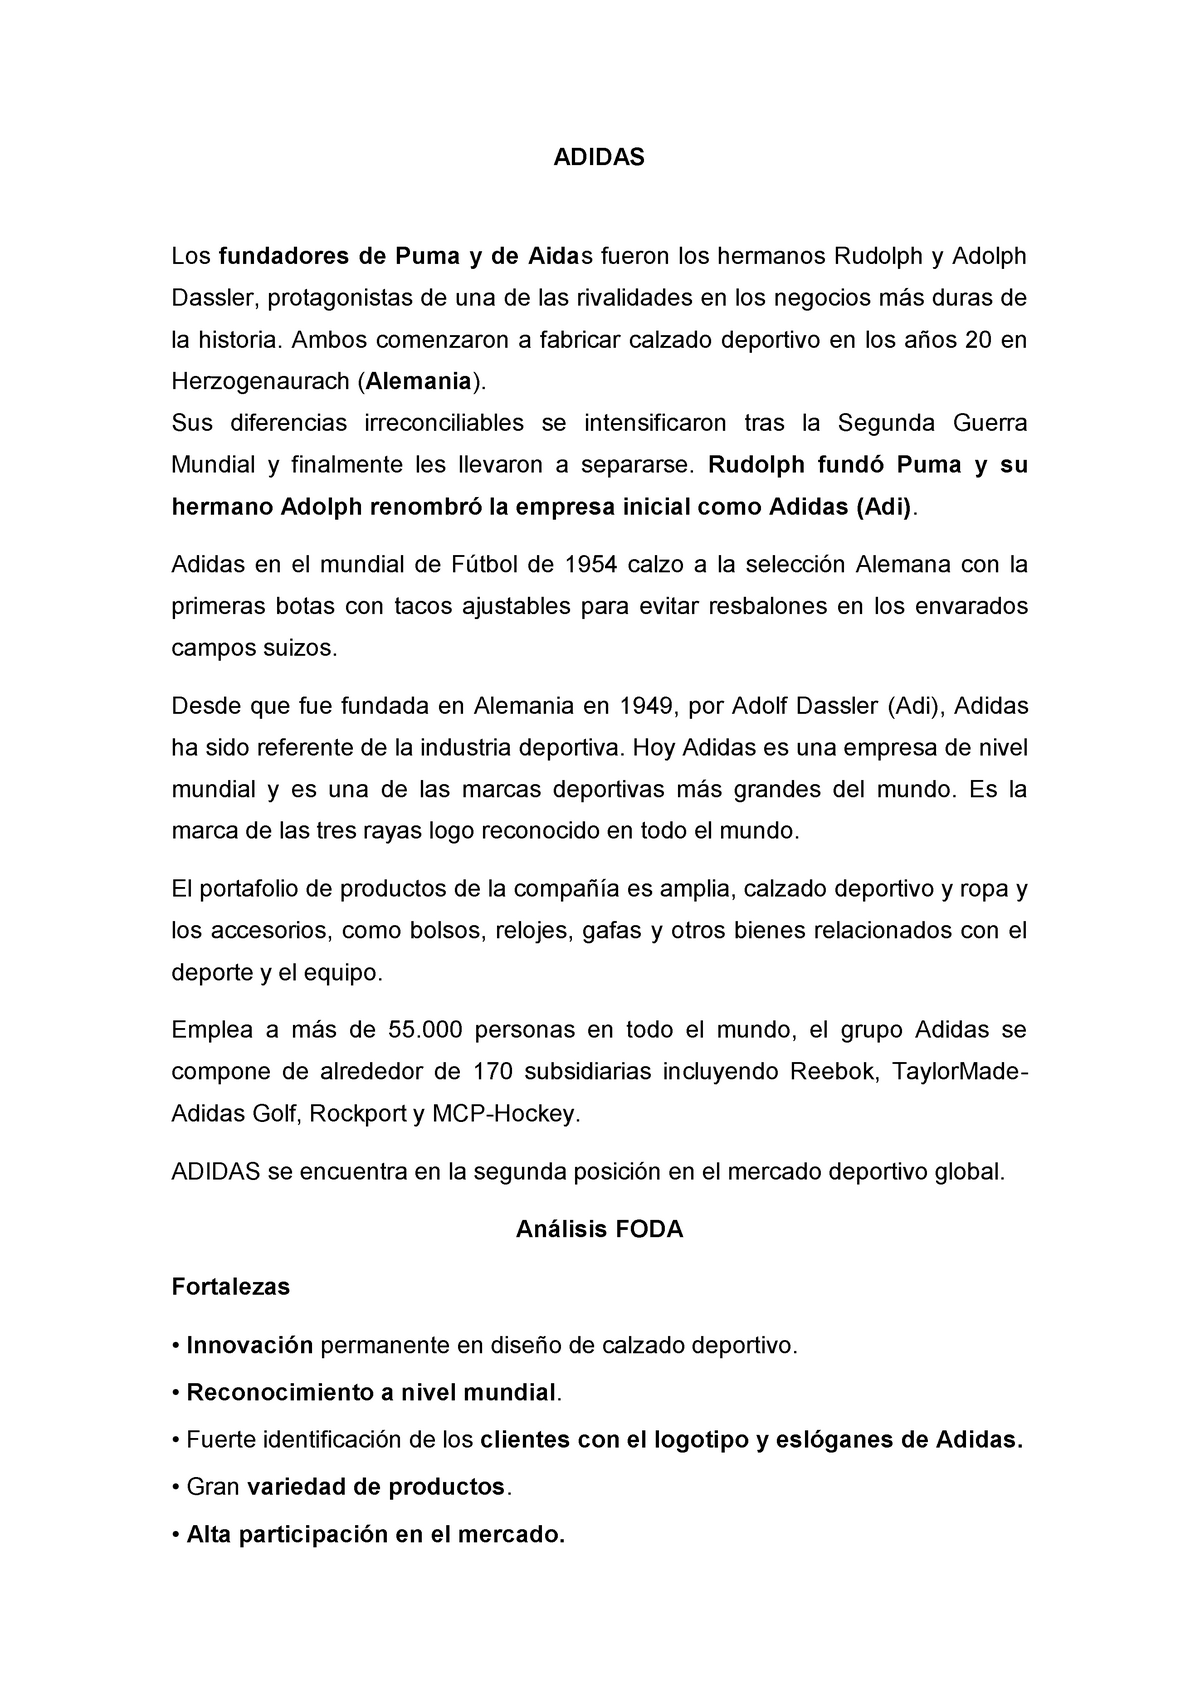 Análisis y Matriz BCG de Adidas - ADIDAS Los fundadores de Puma y de Aidas los - Studocu